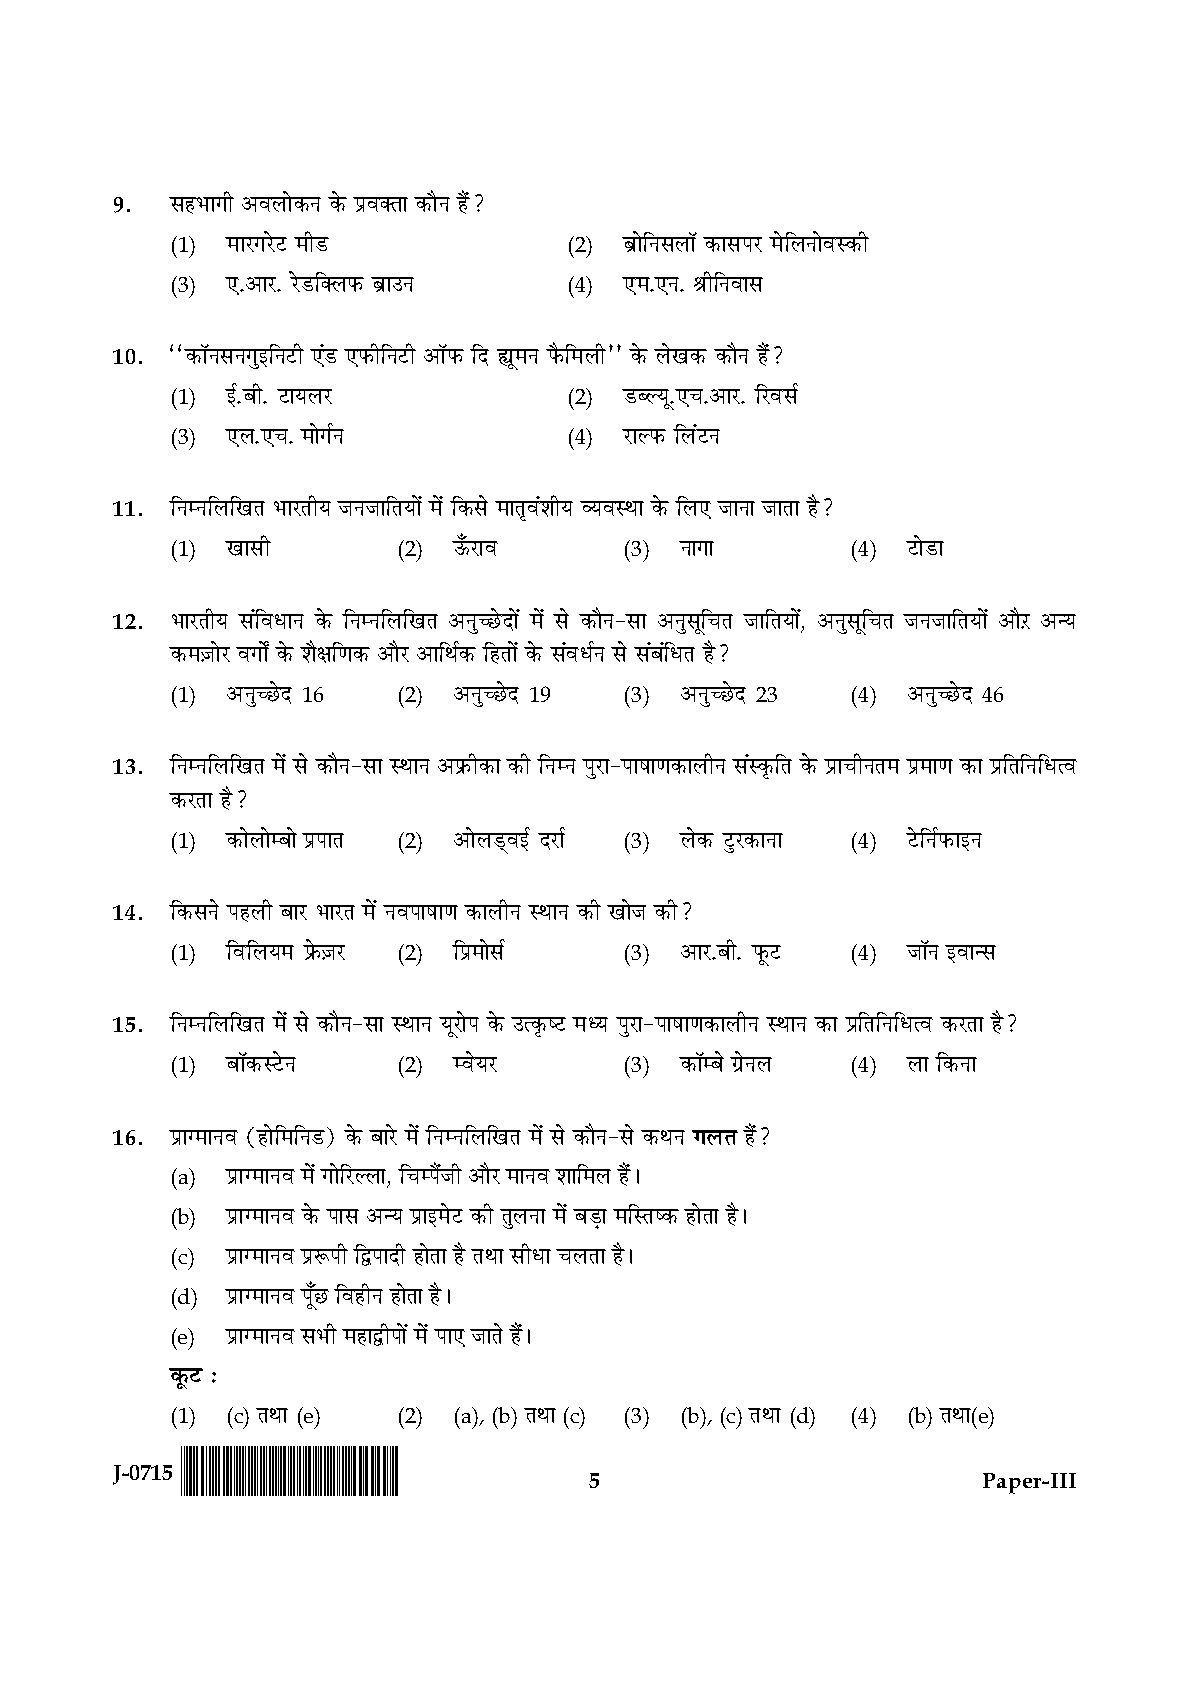 UGC NET Anthropology Question Paper III June 2015 5